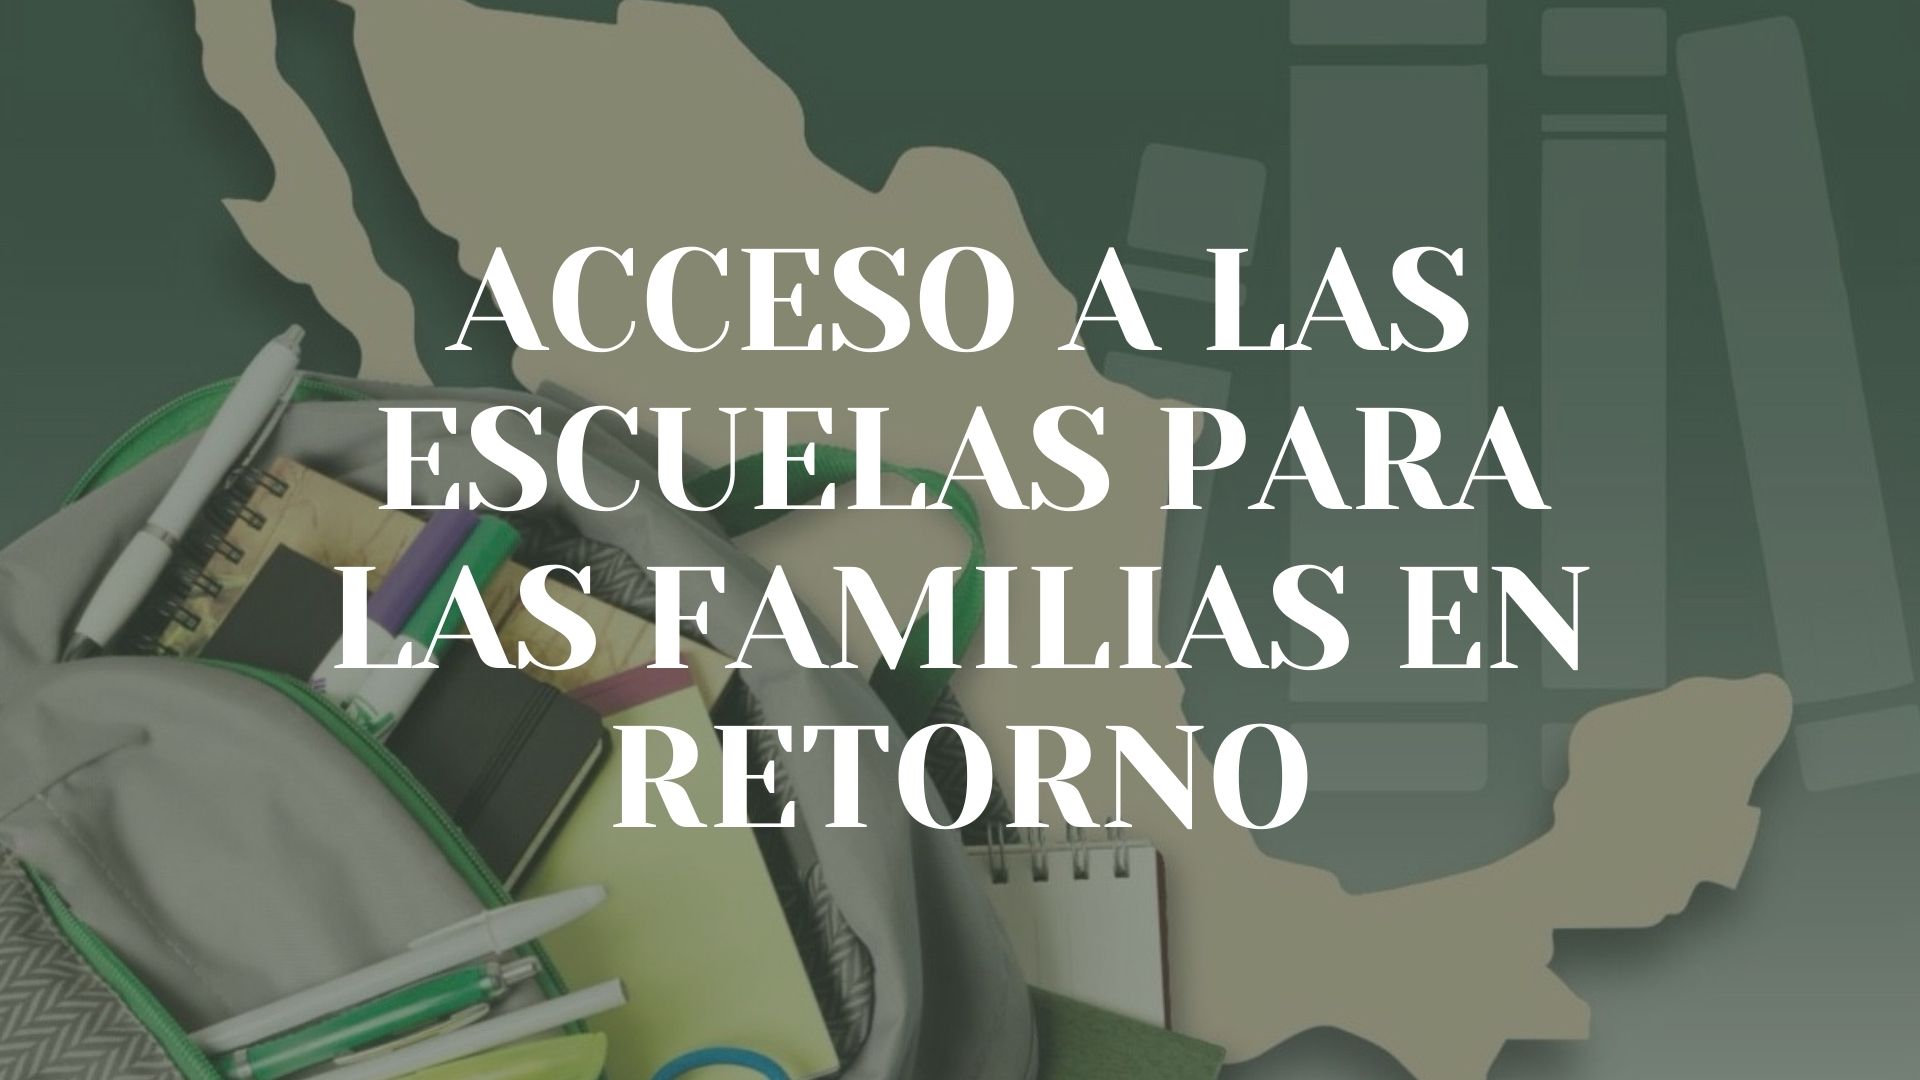 /cms/uploads/image/file/666432/Acceso_a_las_Escuelas_Familias_en_retorno.jpg